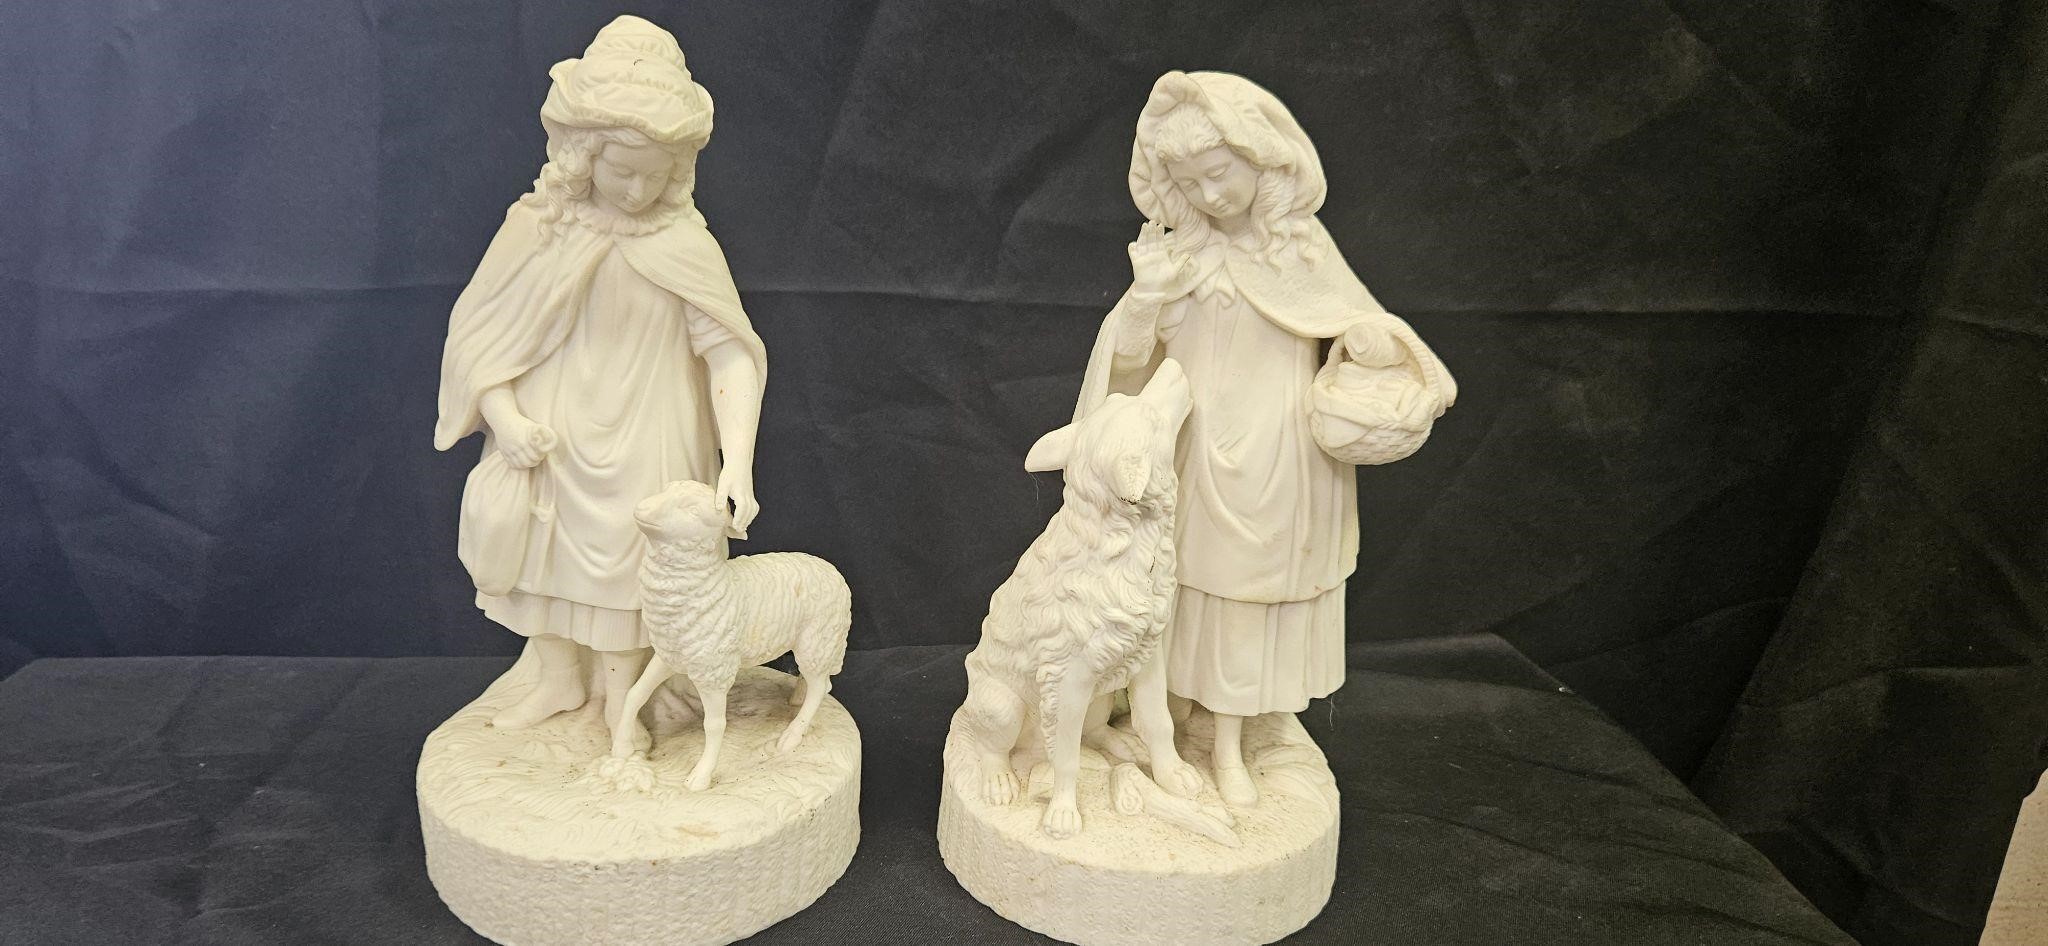 2 porcelain statues